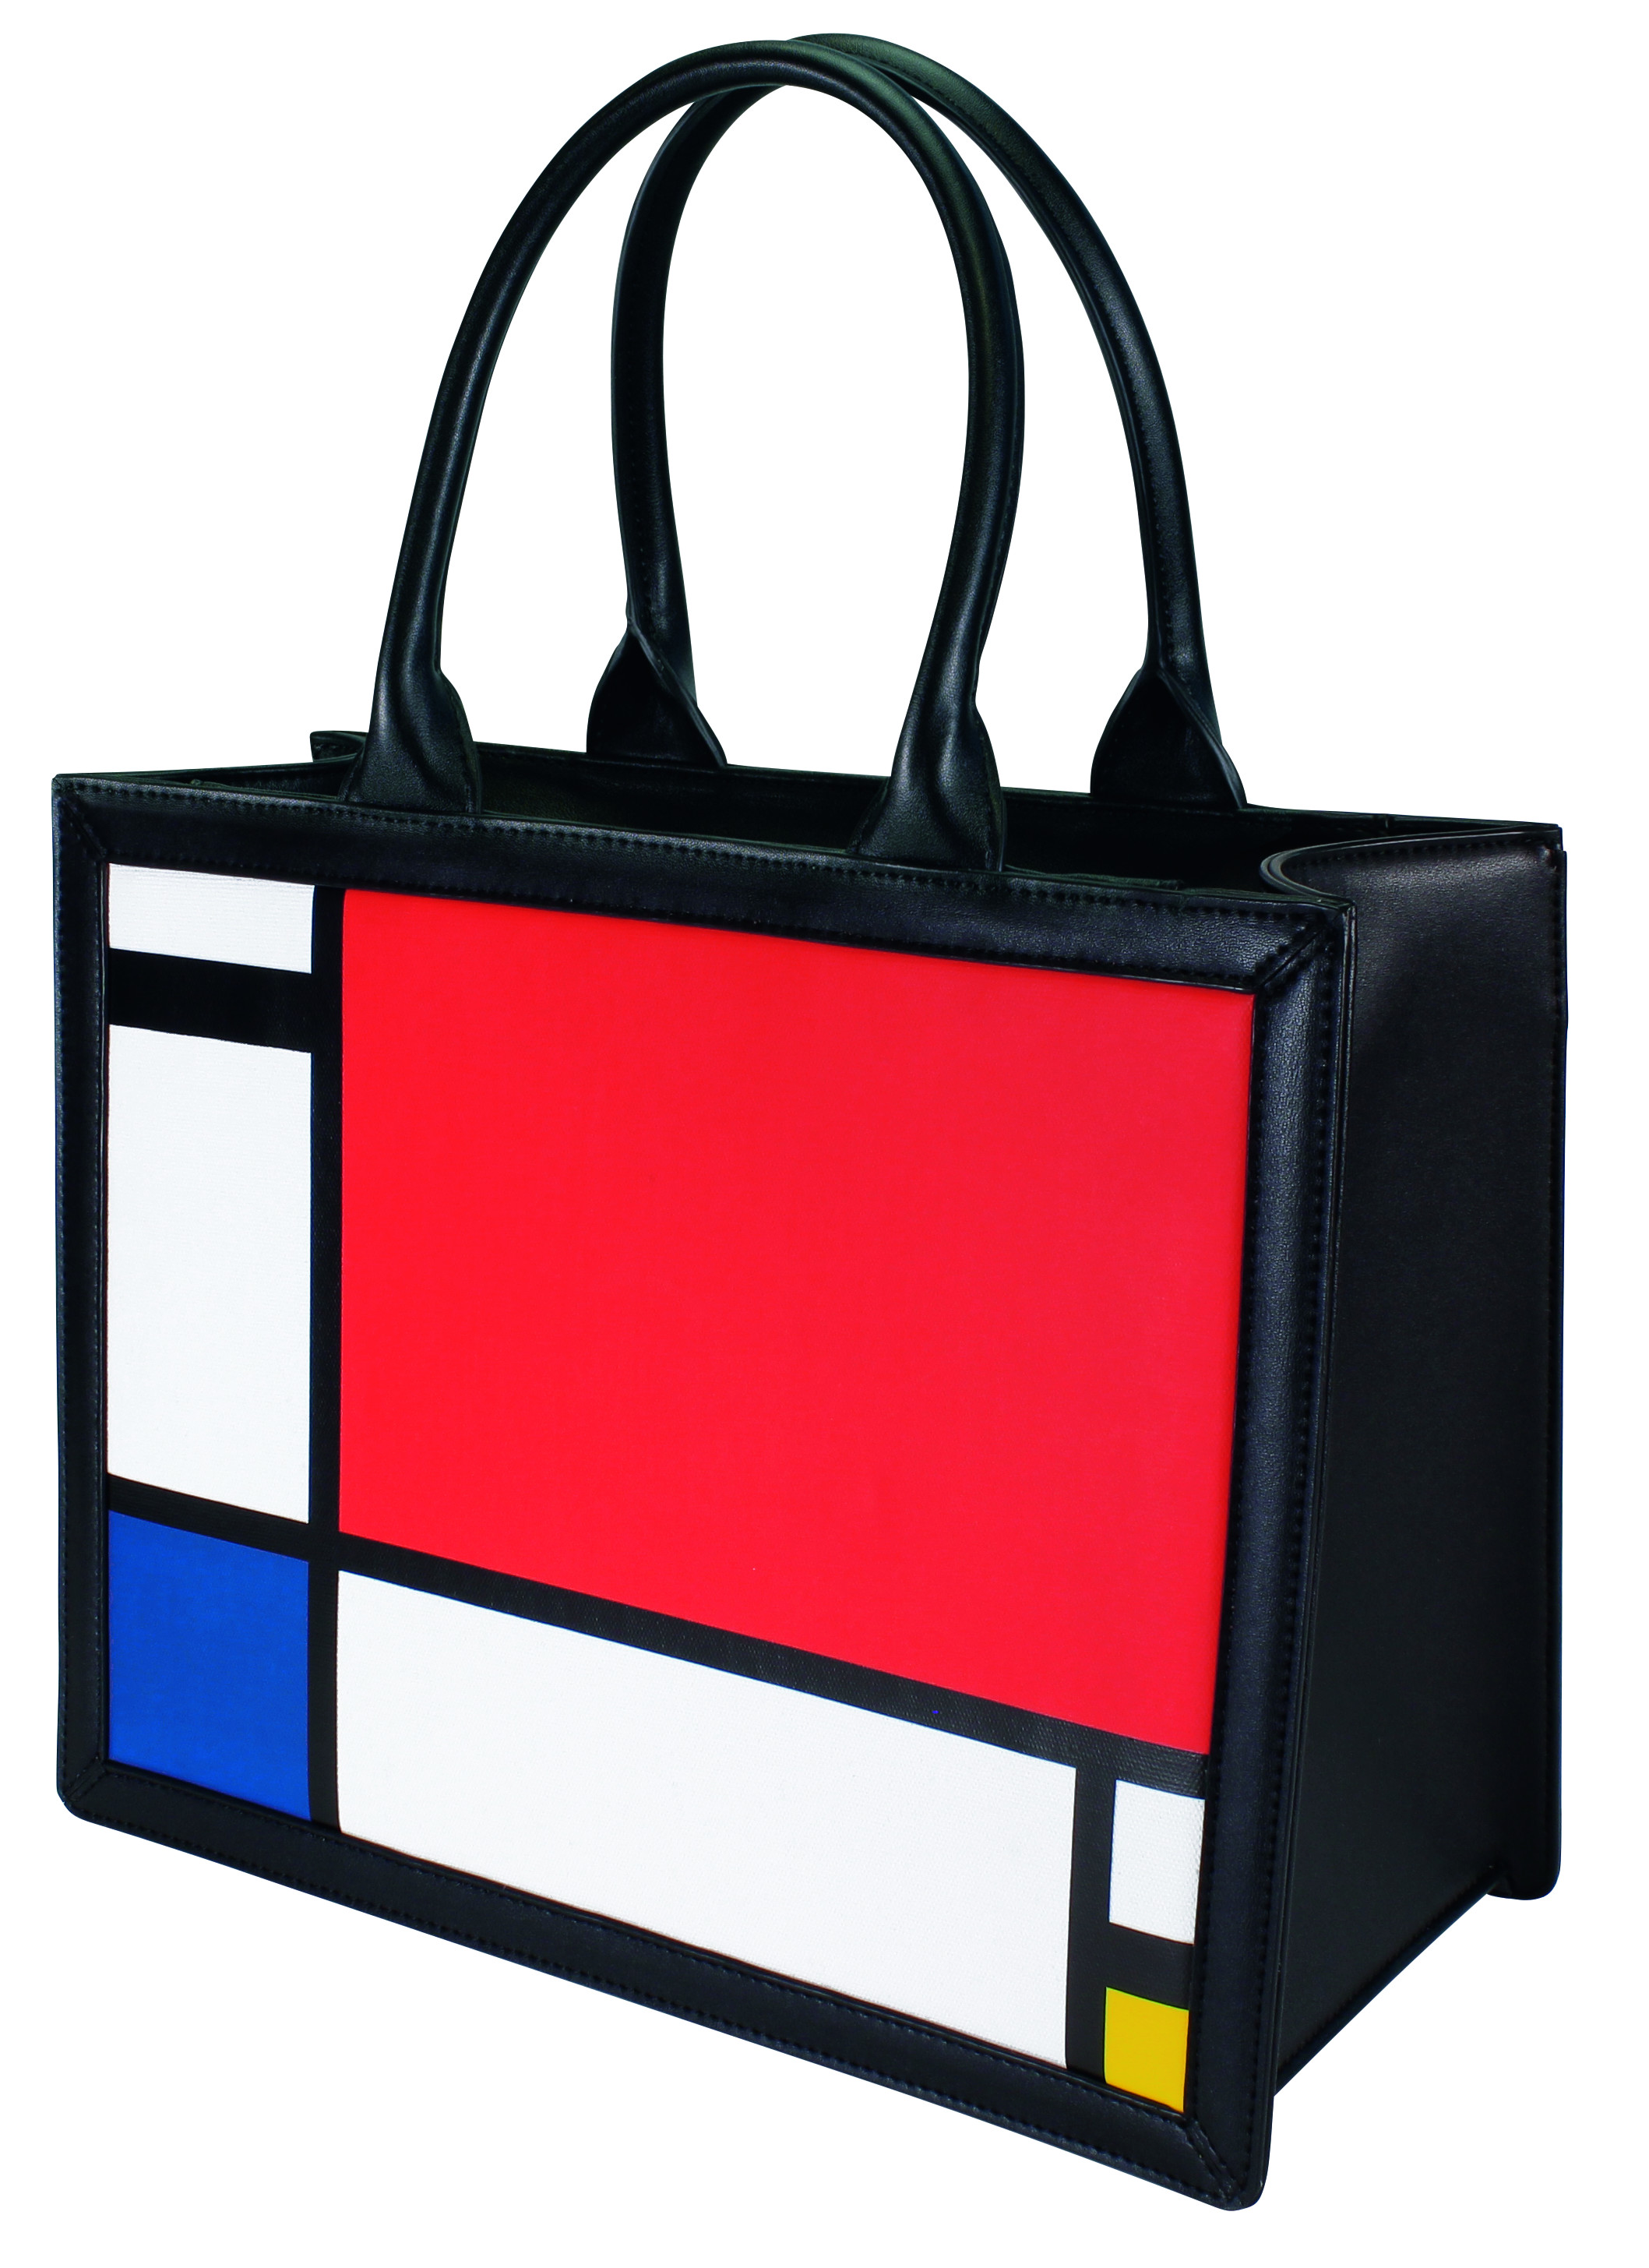 Handtasche Composition II - Mondrian